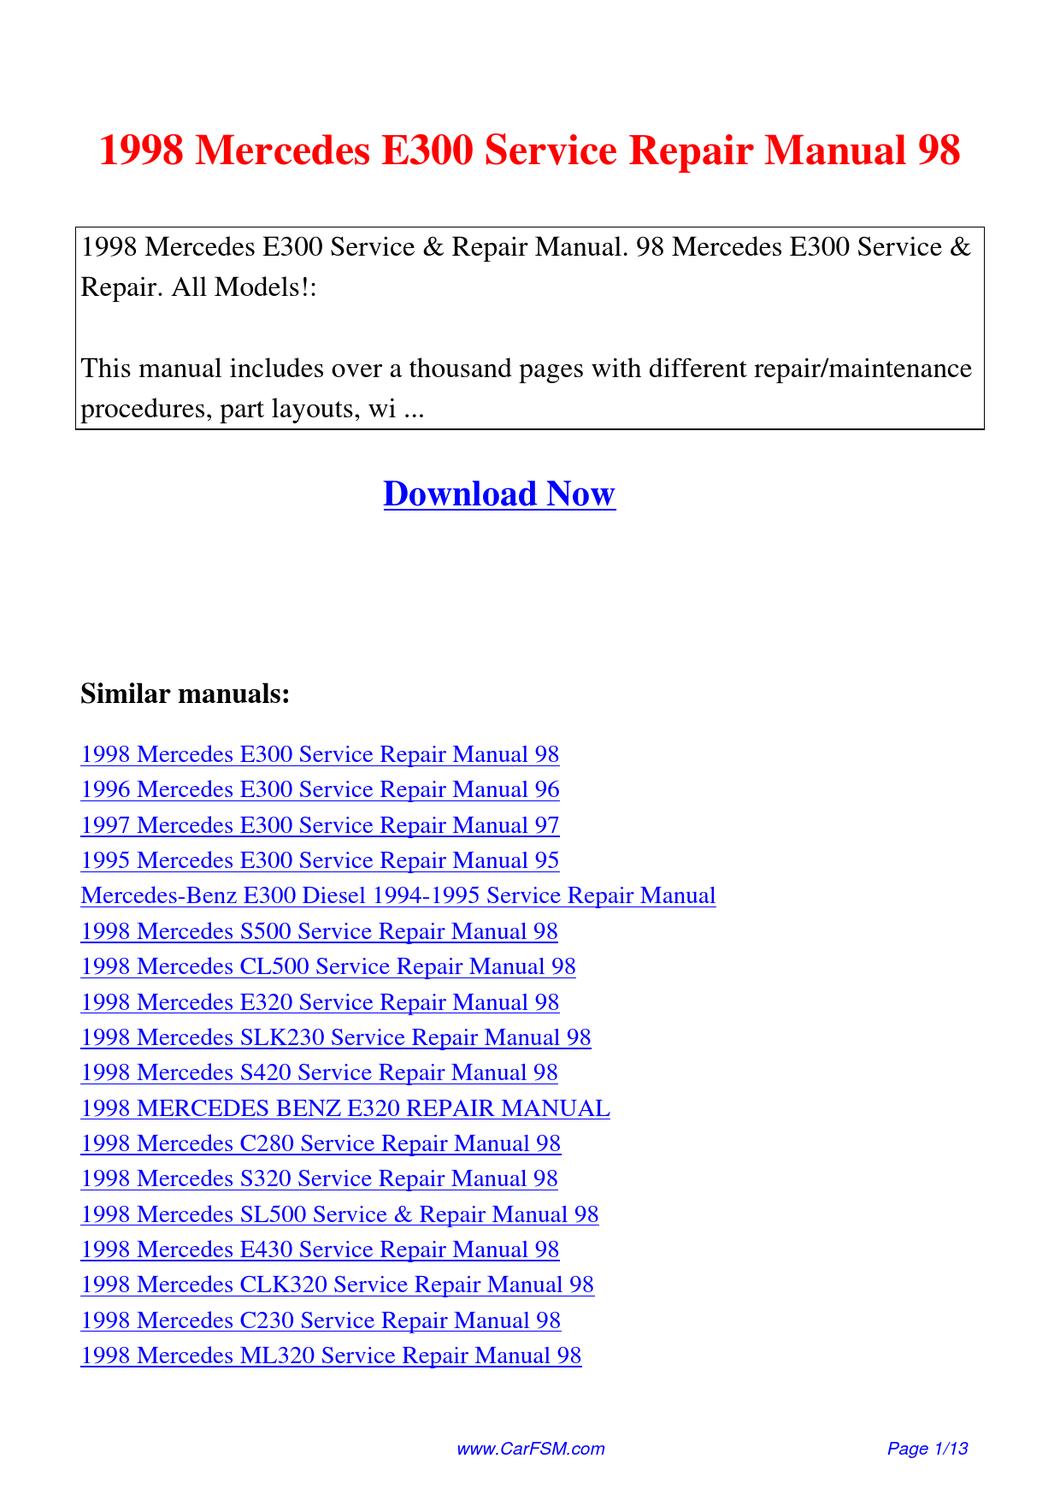 1998 mercedes ml320 repair manual